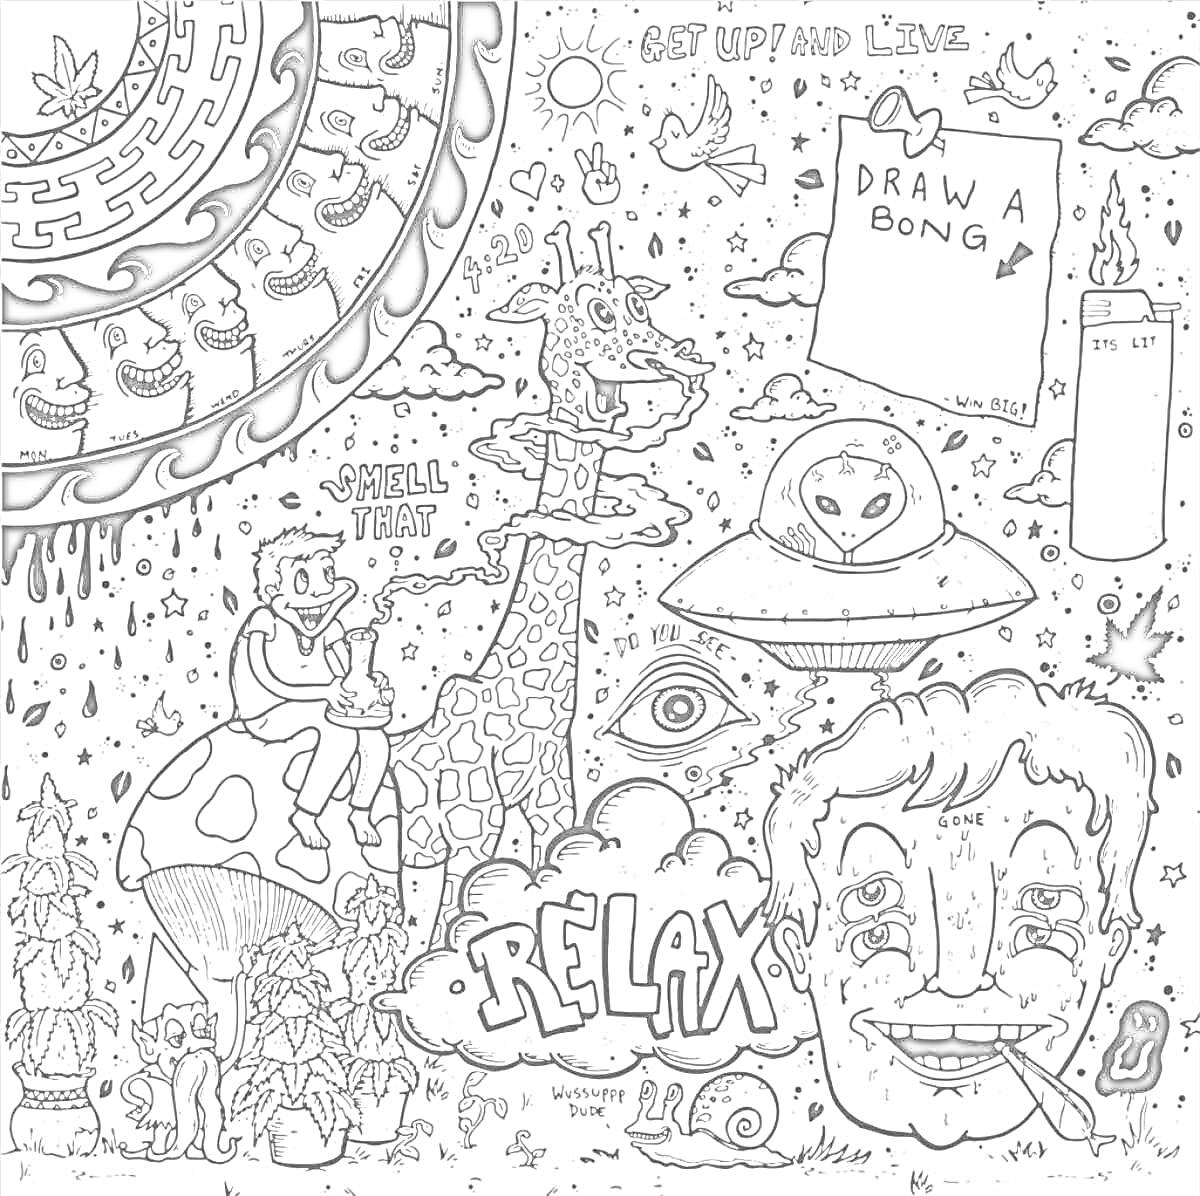 психоделический рисунок с жирафом, НЛО, грибами и надписями